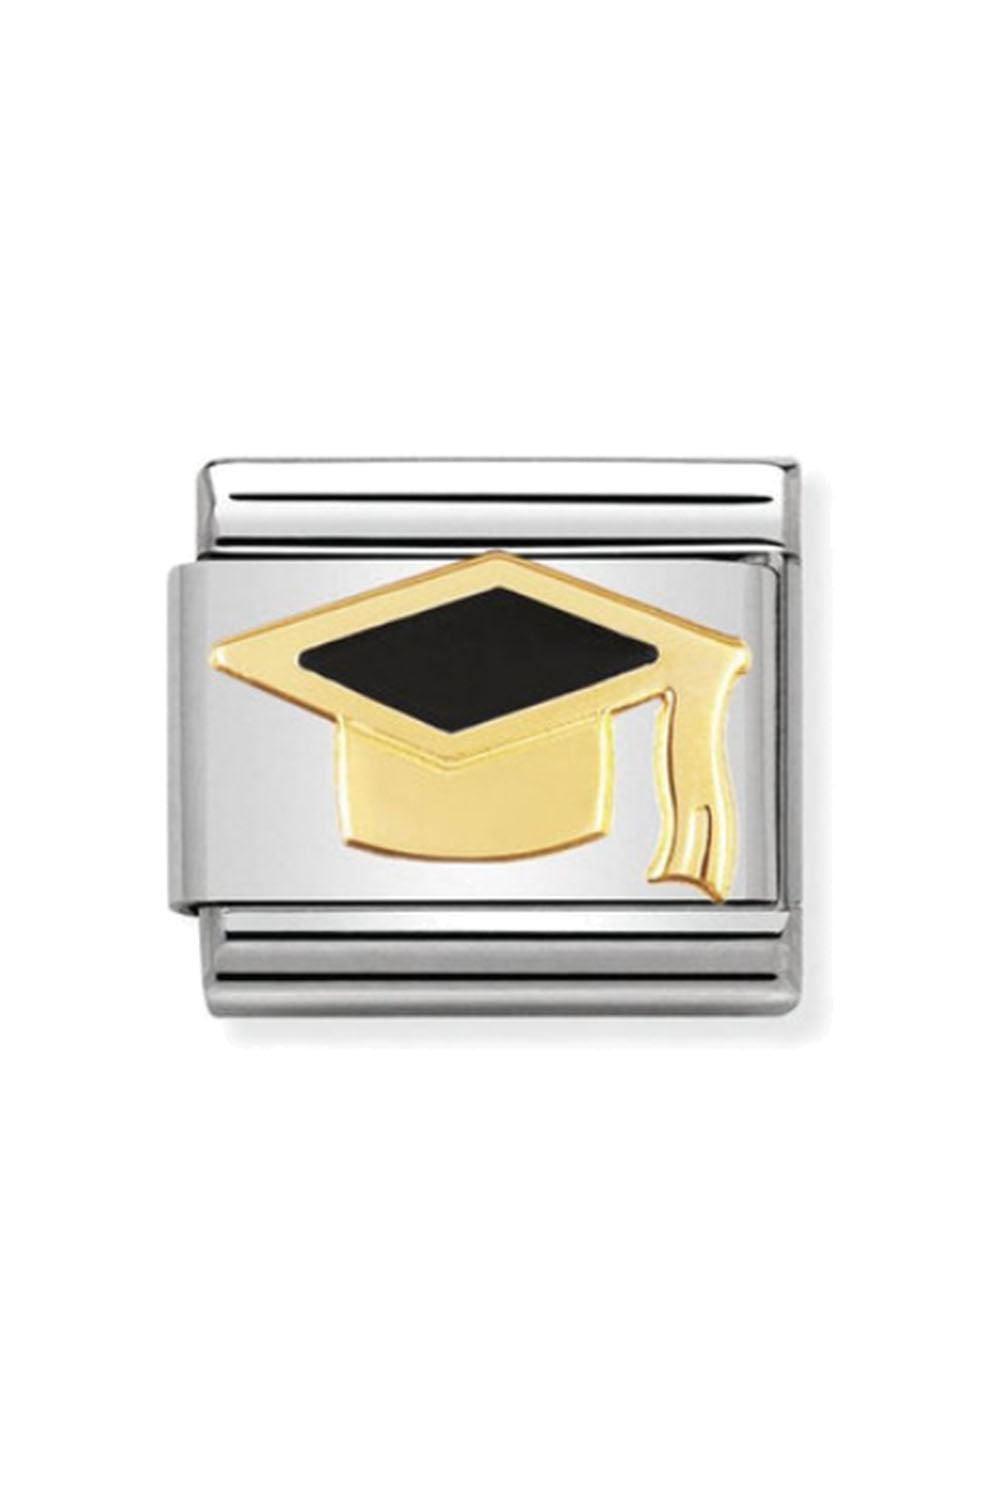 BACK TO SCHOOL 18k Gold & enamel Black Graduate Hat